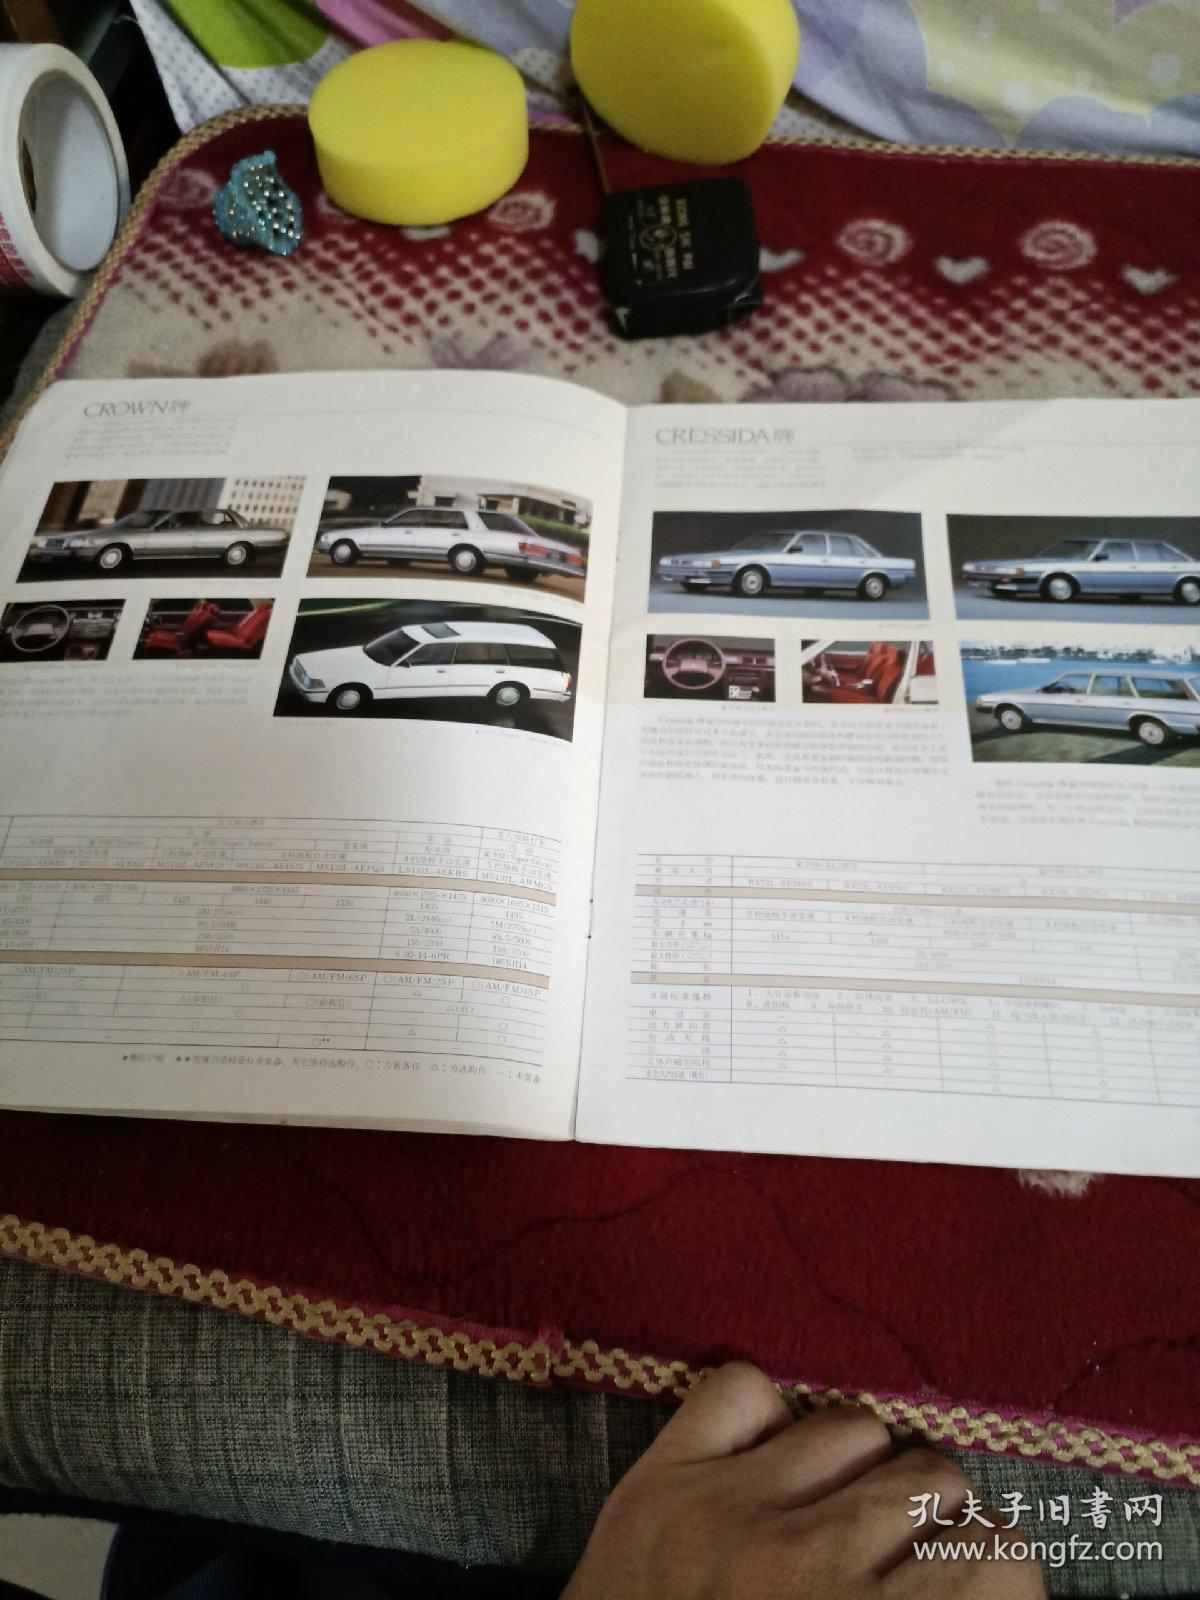 【汽车广告宣传单】丰田汽车TOYOTA 轿车/商业用车/载重车 综合目录 1988 宣传册，20页。